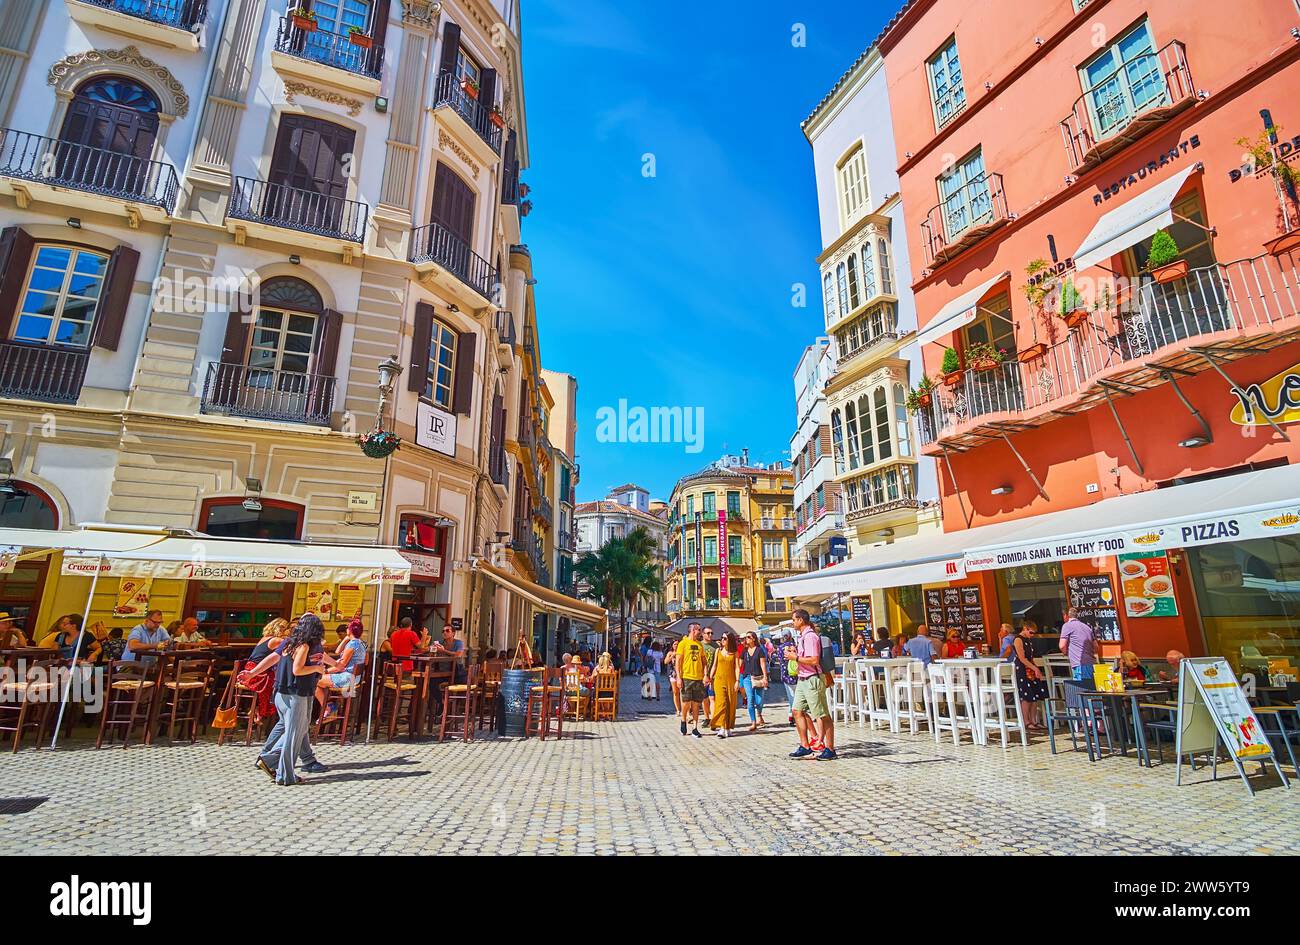 MALAGA, SPAGNA - 28 SETTEMBRE 2019: L'affollata piazza Plaza del Siglo con famosi bar e ristoranti di tapas, Malaga, Spagna Foto Stock